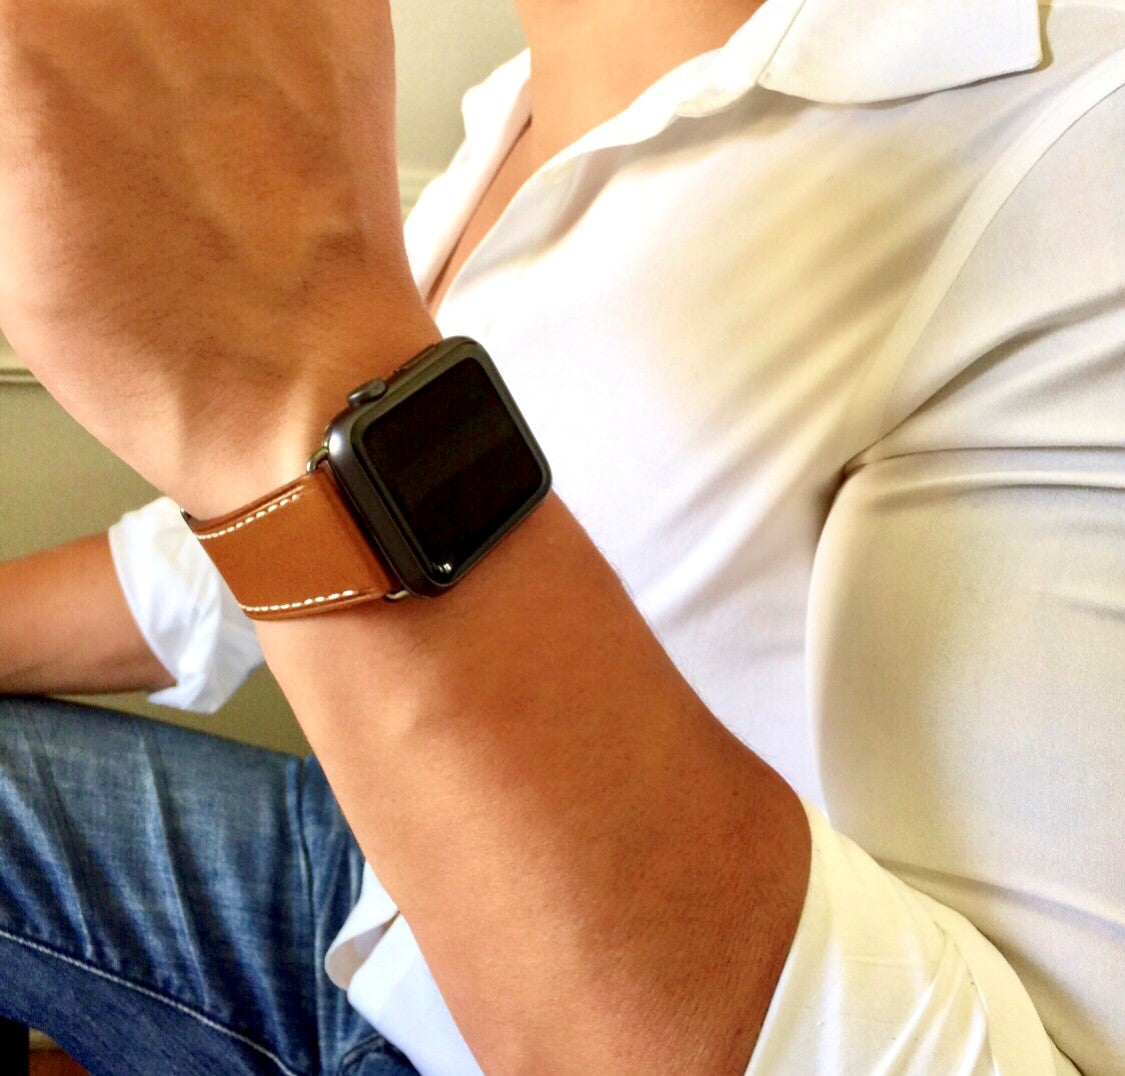 Тканевый плетеный ремень мужской для Apple watch. Эпл вотч ремешок какой лучше для мужчин.